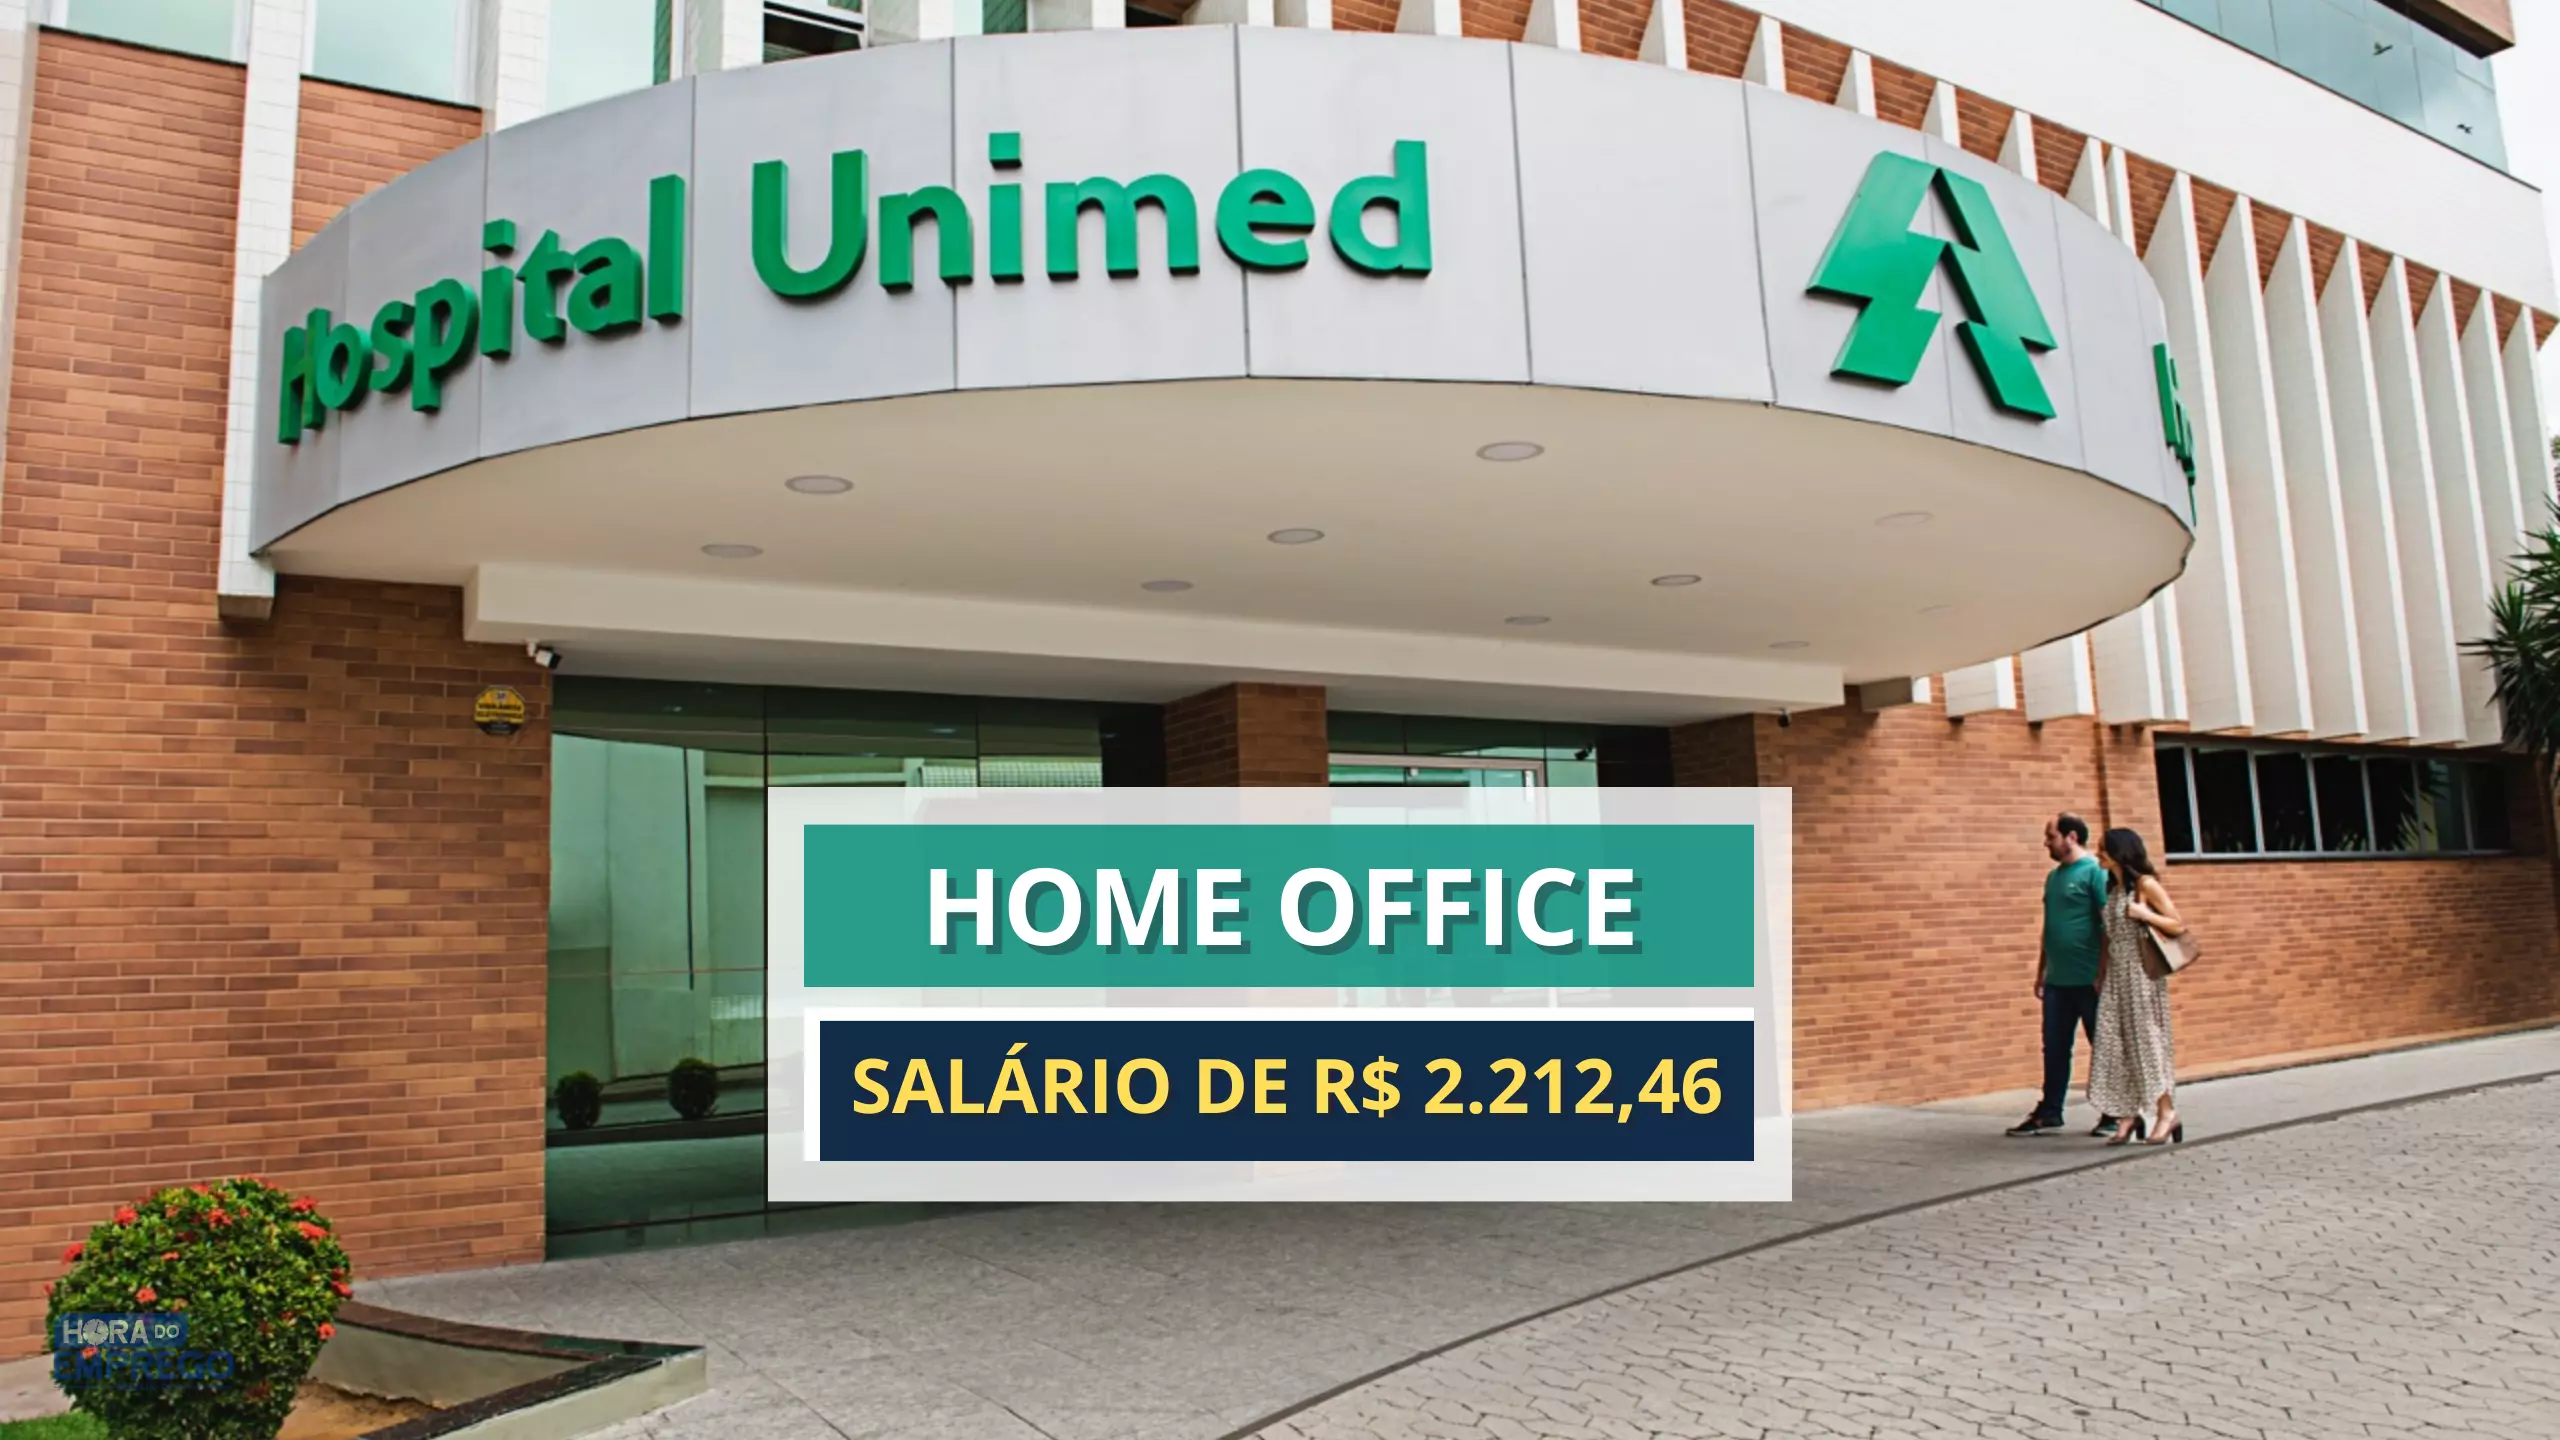 Unimed abre vaga 100% Home Office de NÍVEL MÉDIO para Assistente de Customer com salário de R$ 2.212,46 e Alimentação R$ 800,00